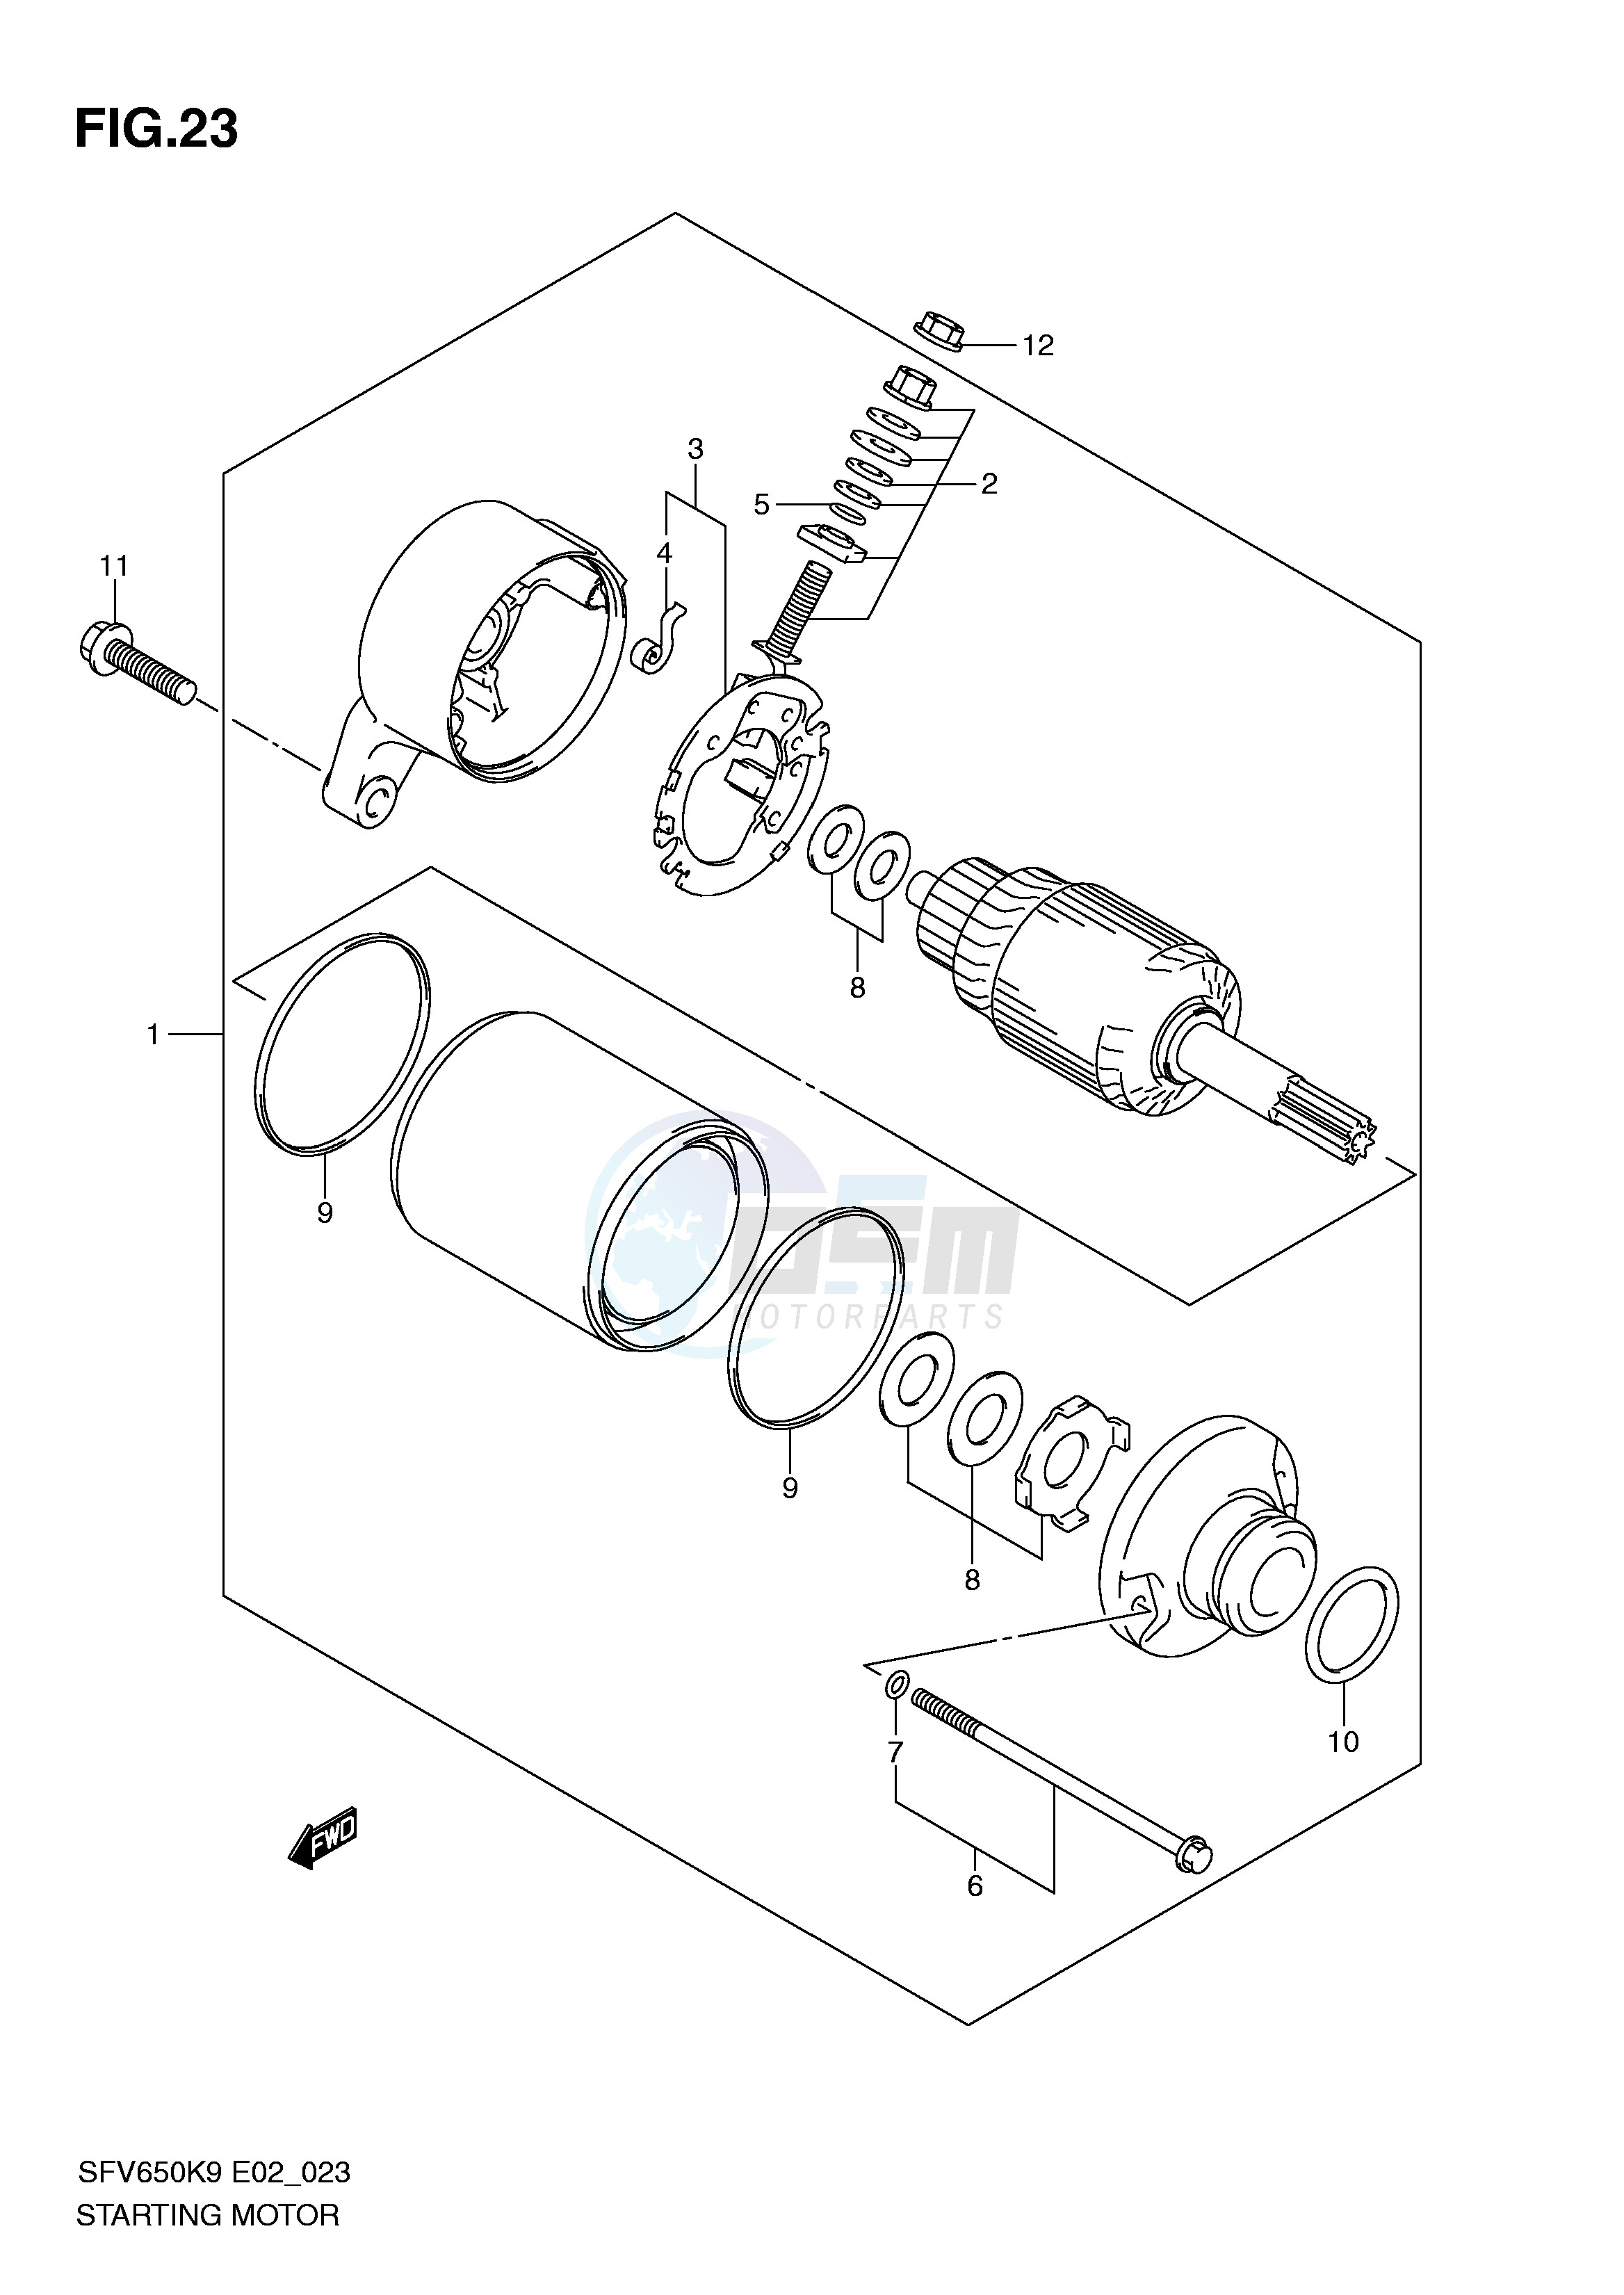 STARTING MOTOR (SFV650K9 UK9) blueprint